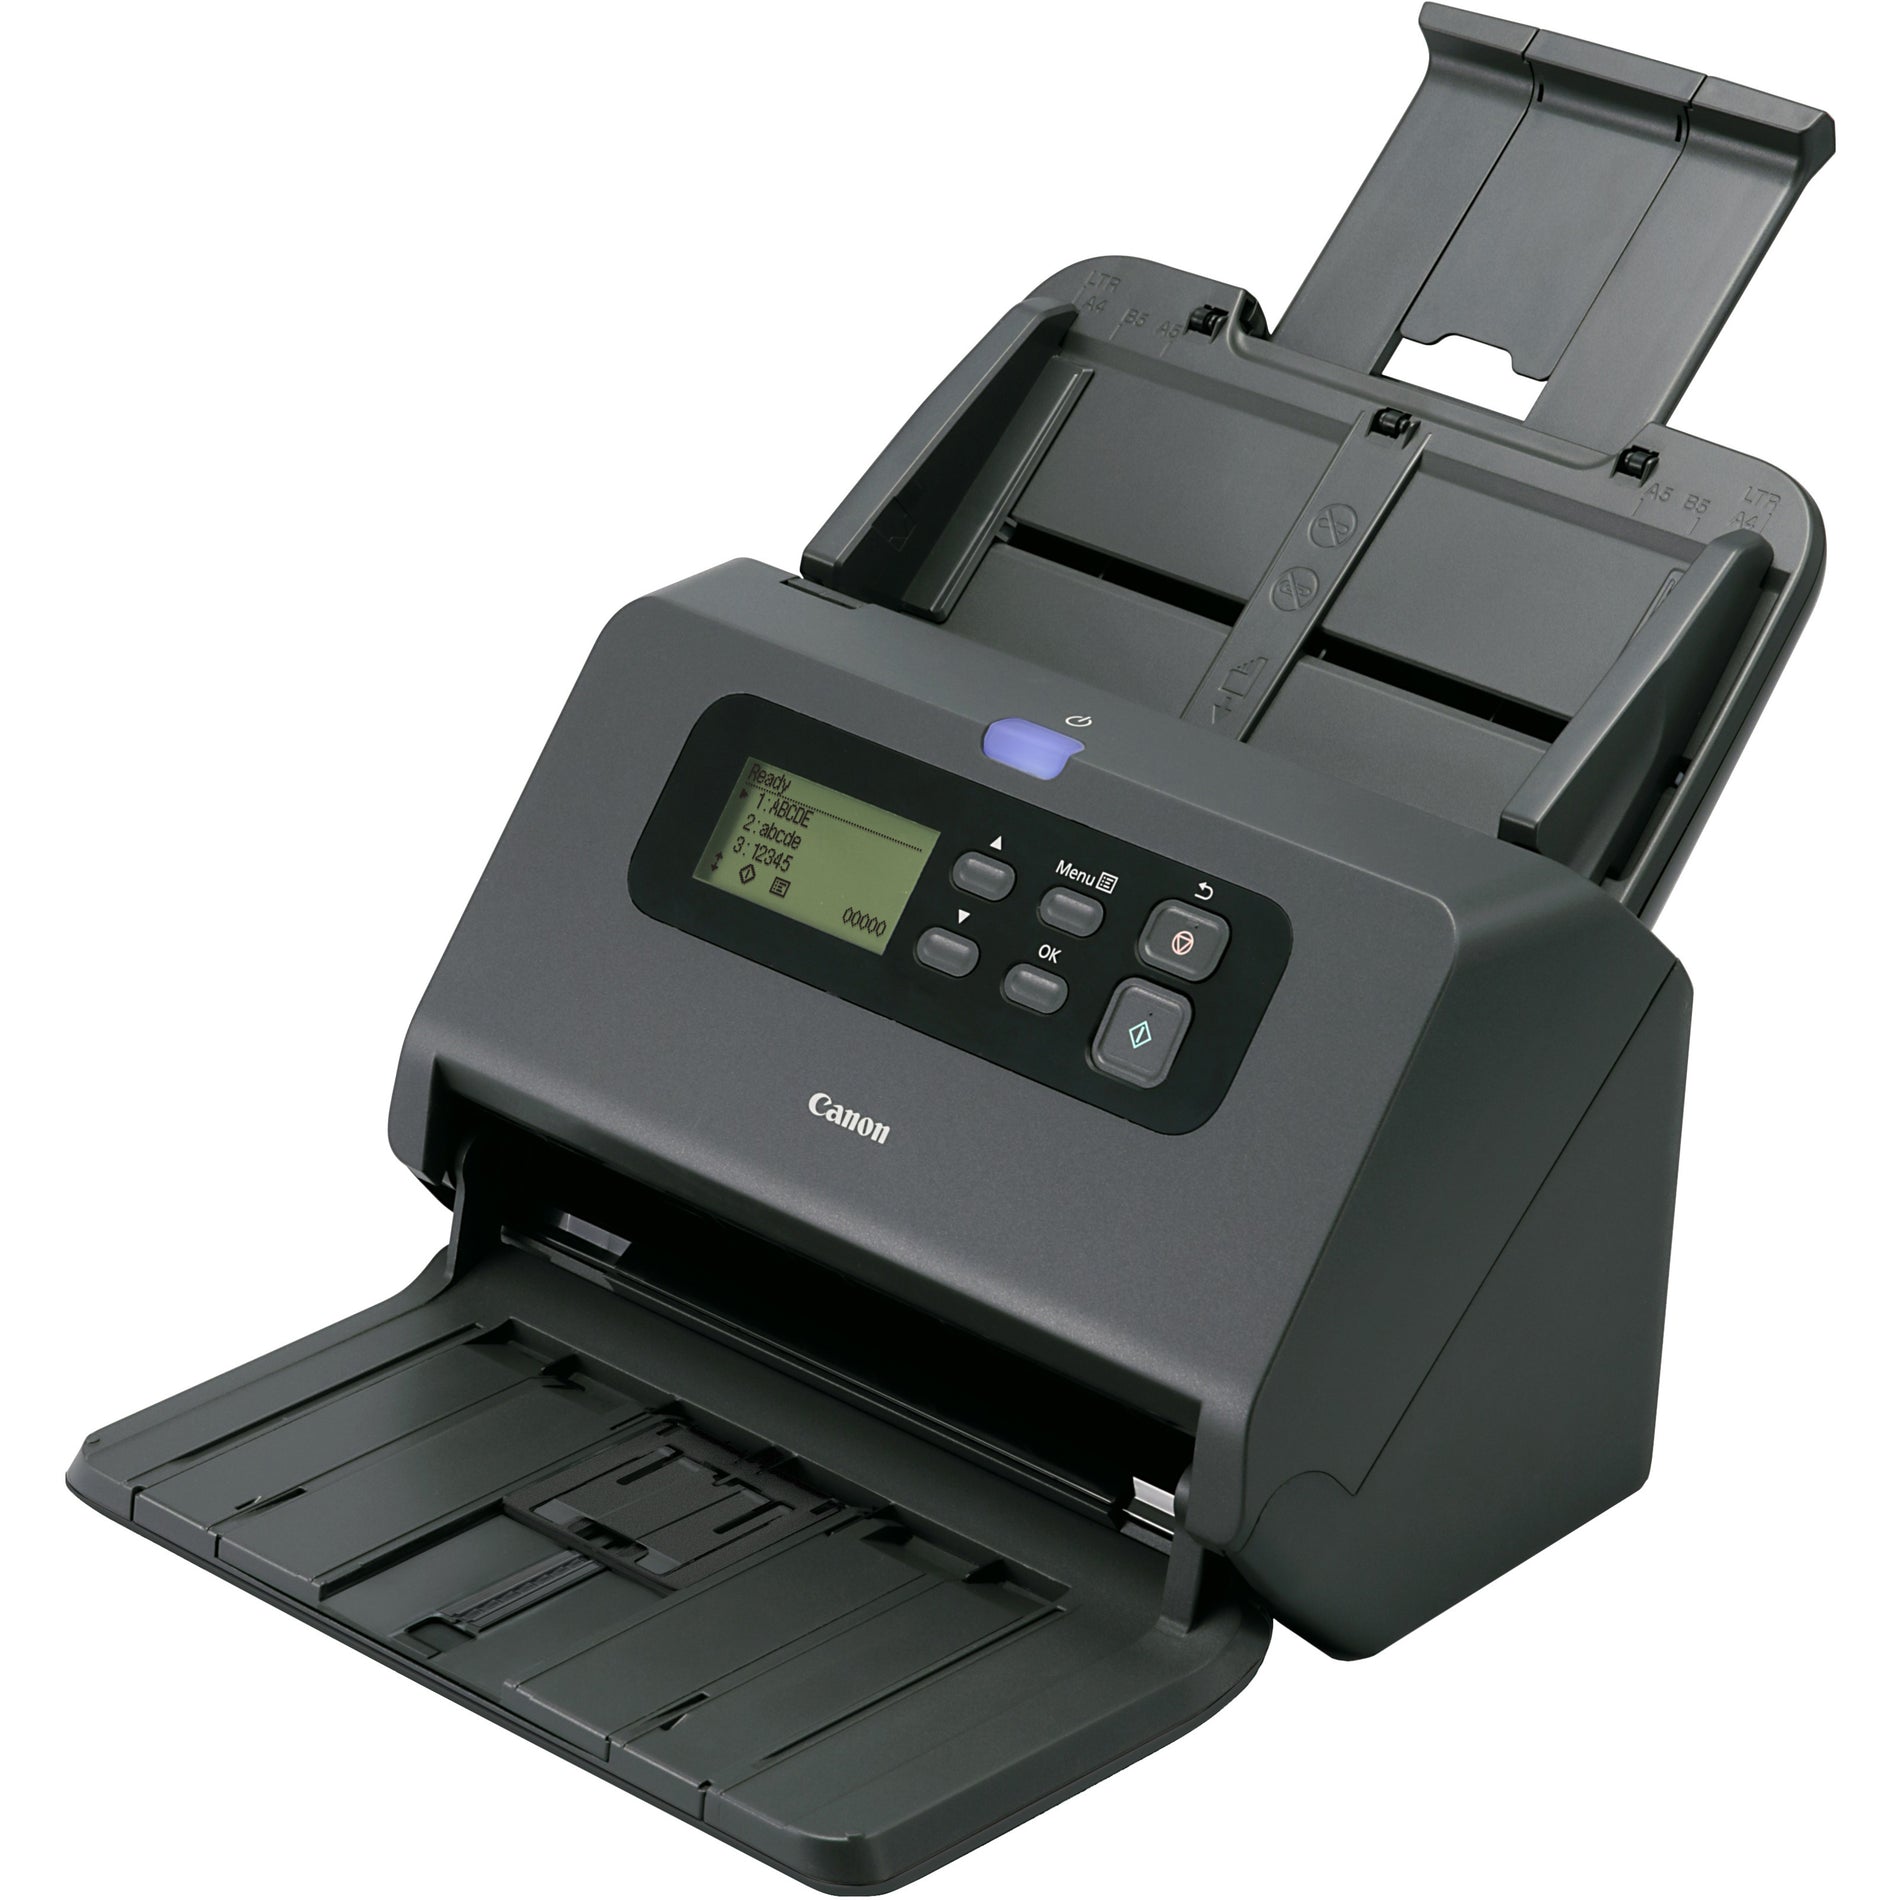 Canon Office Document Scanner, 600 dpi, 80-Sht Capacity, Black (2405C002)